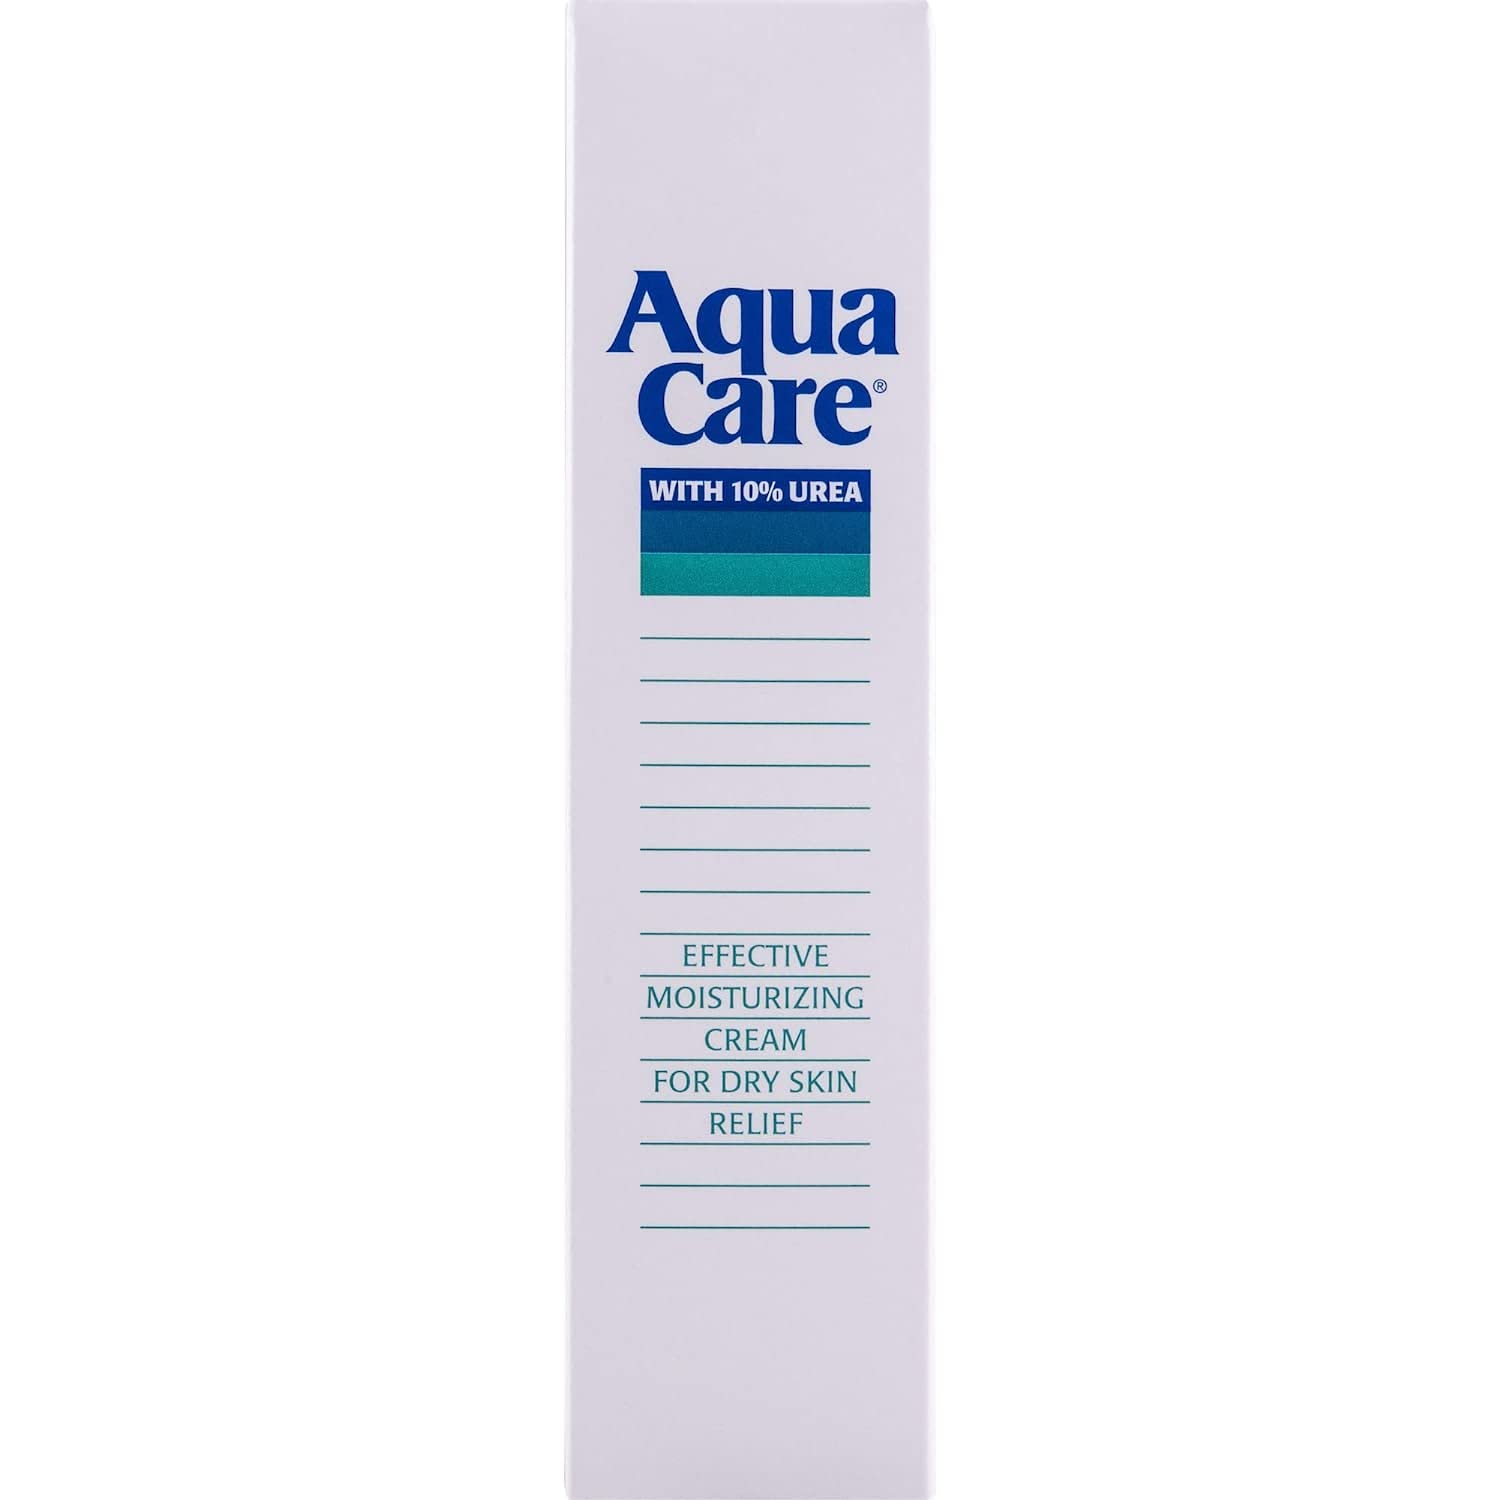 AQUA CARE Cream 2.5 oz (Pack of 3)